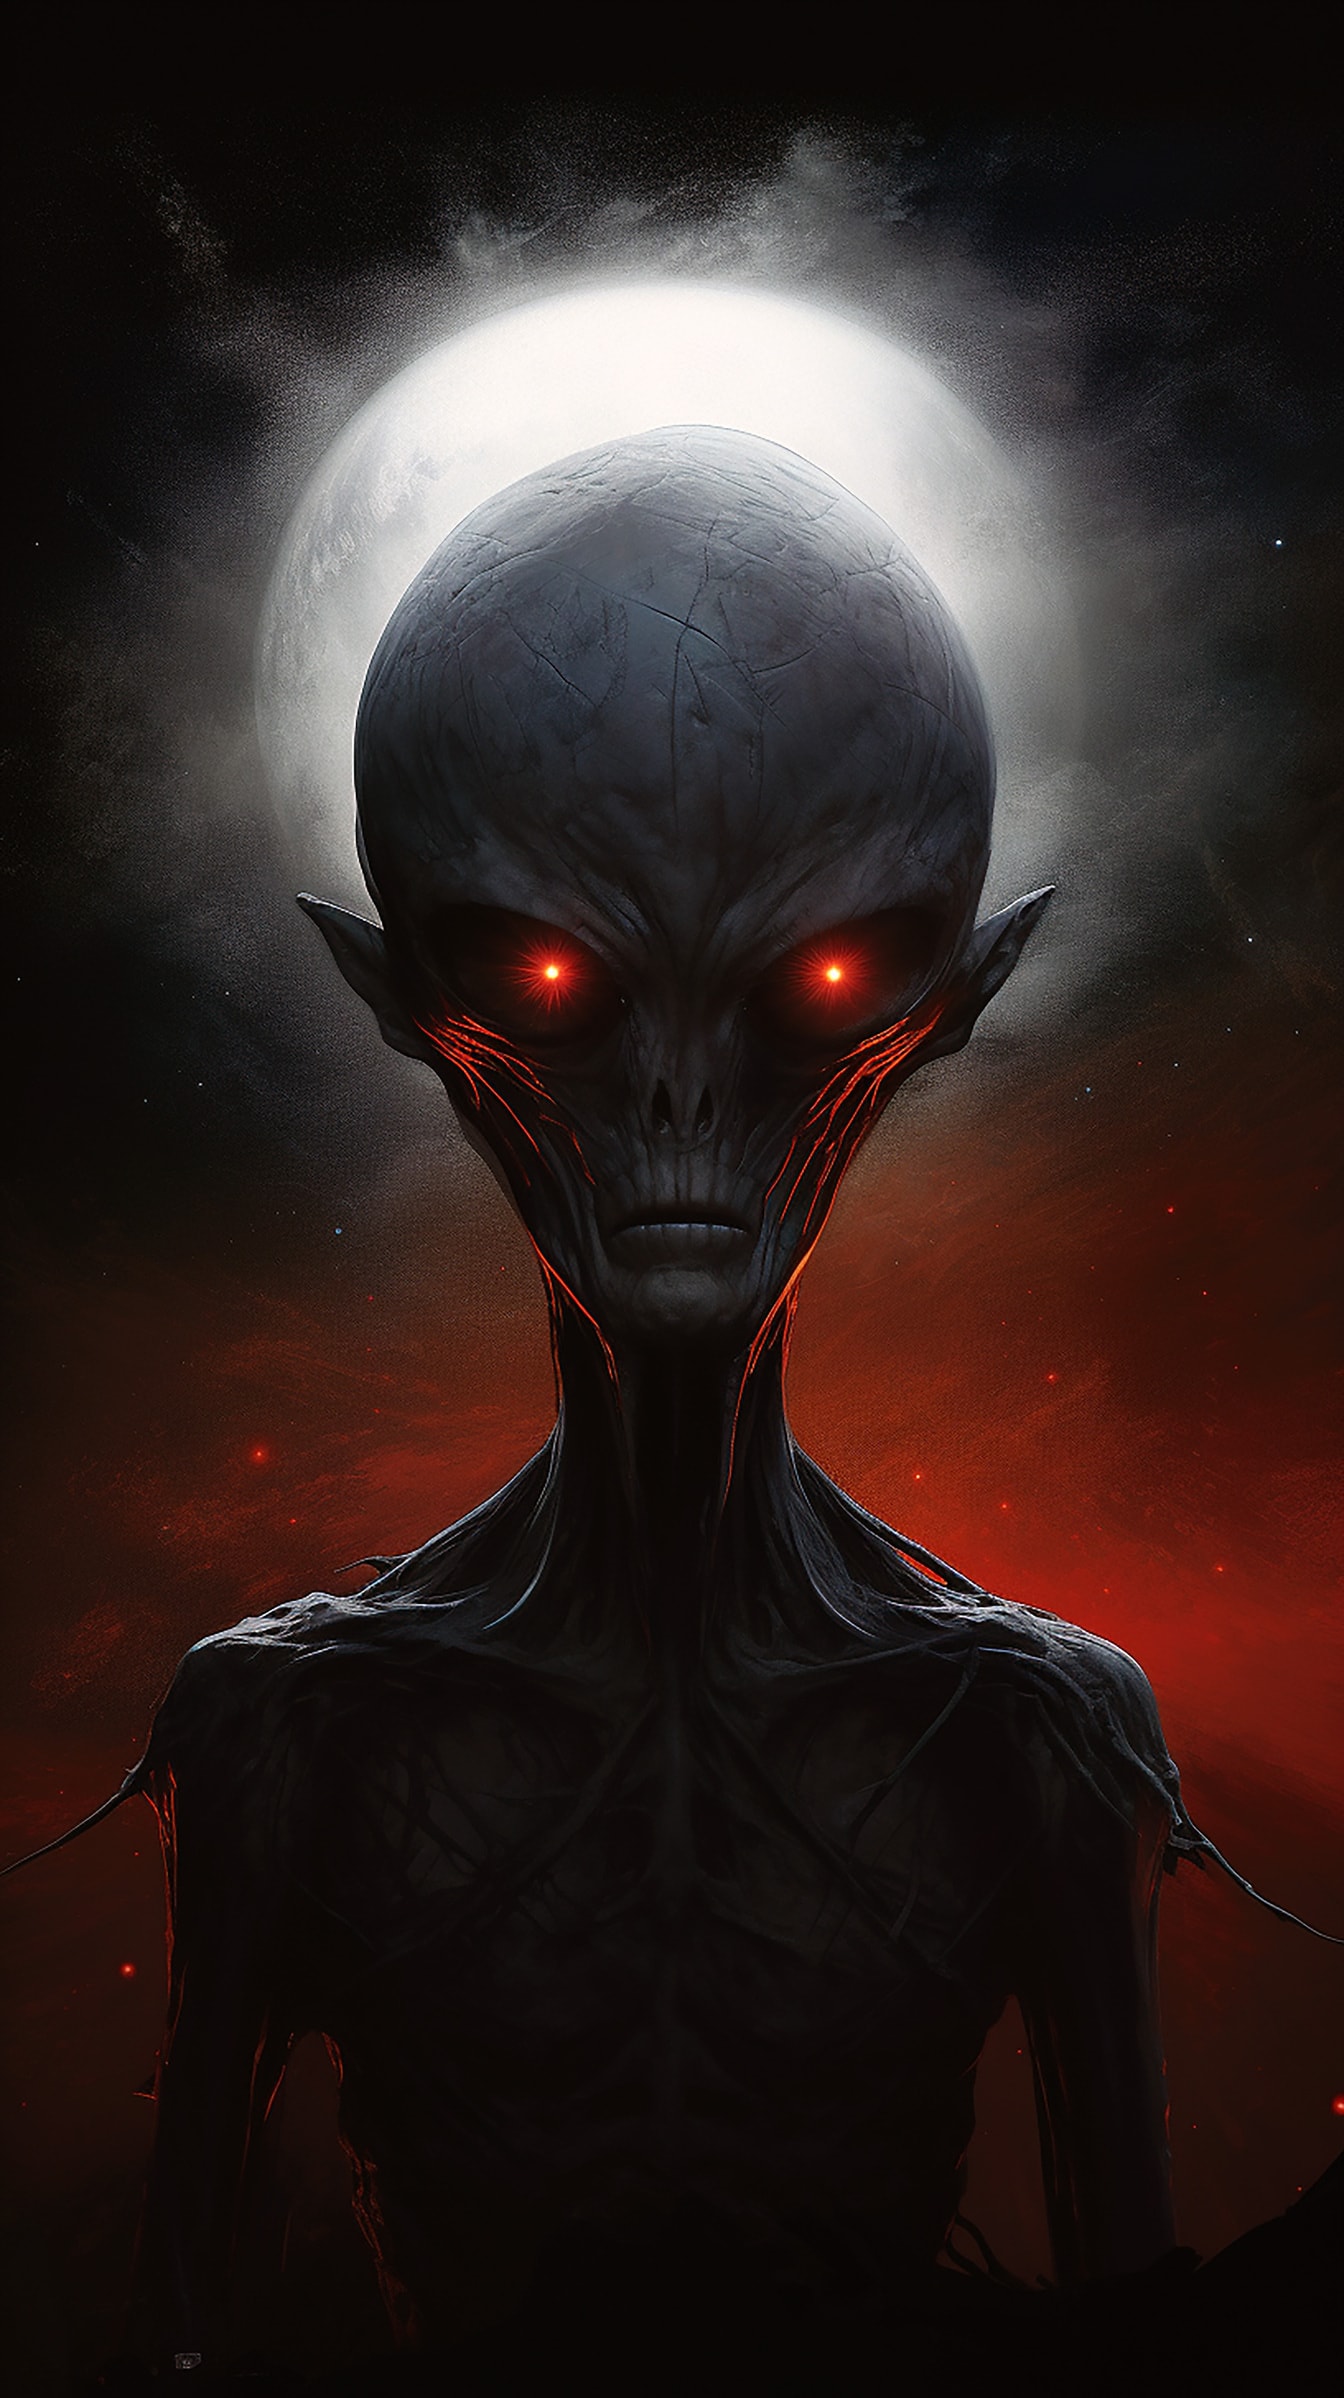 Retrato de horror de alienígena com olhos vermelhos escuros e corpo magro